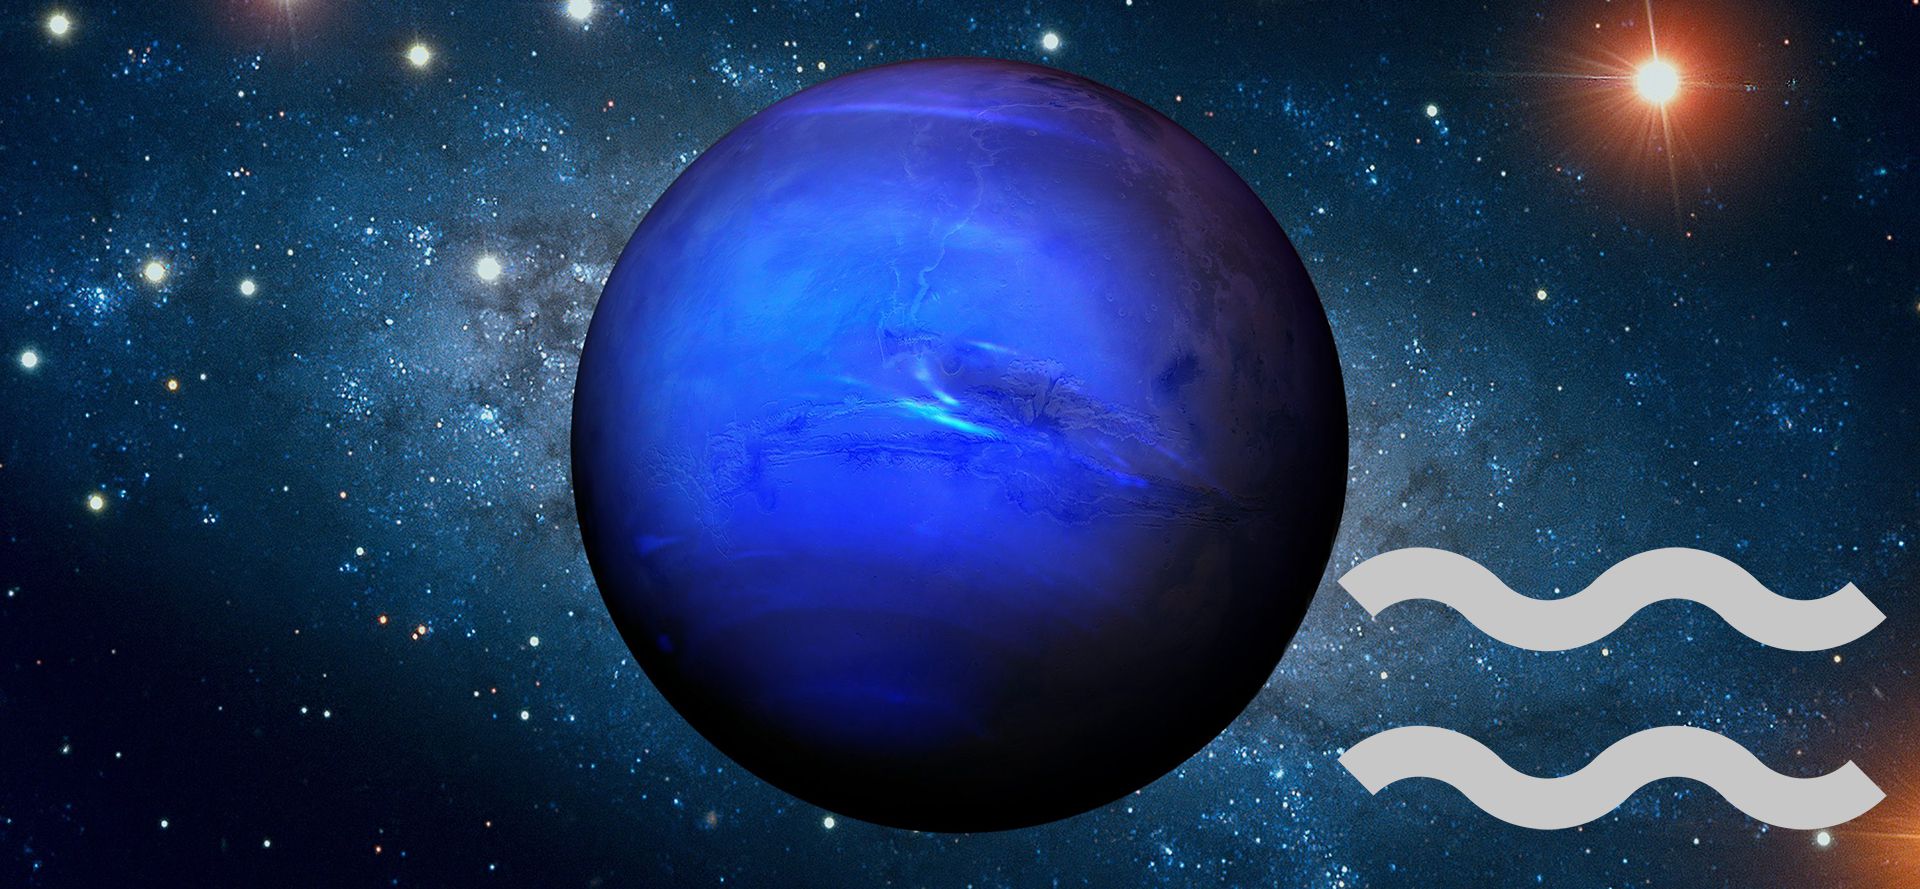 Neptune in Aquarius.